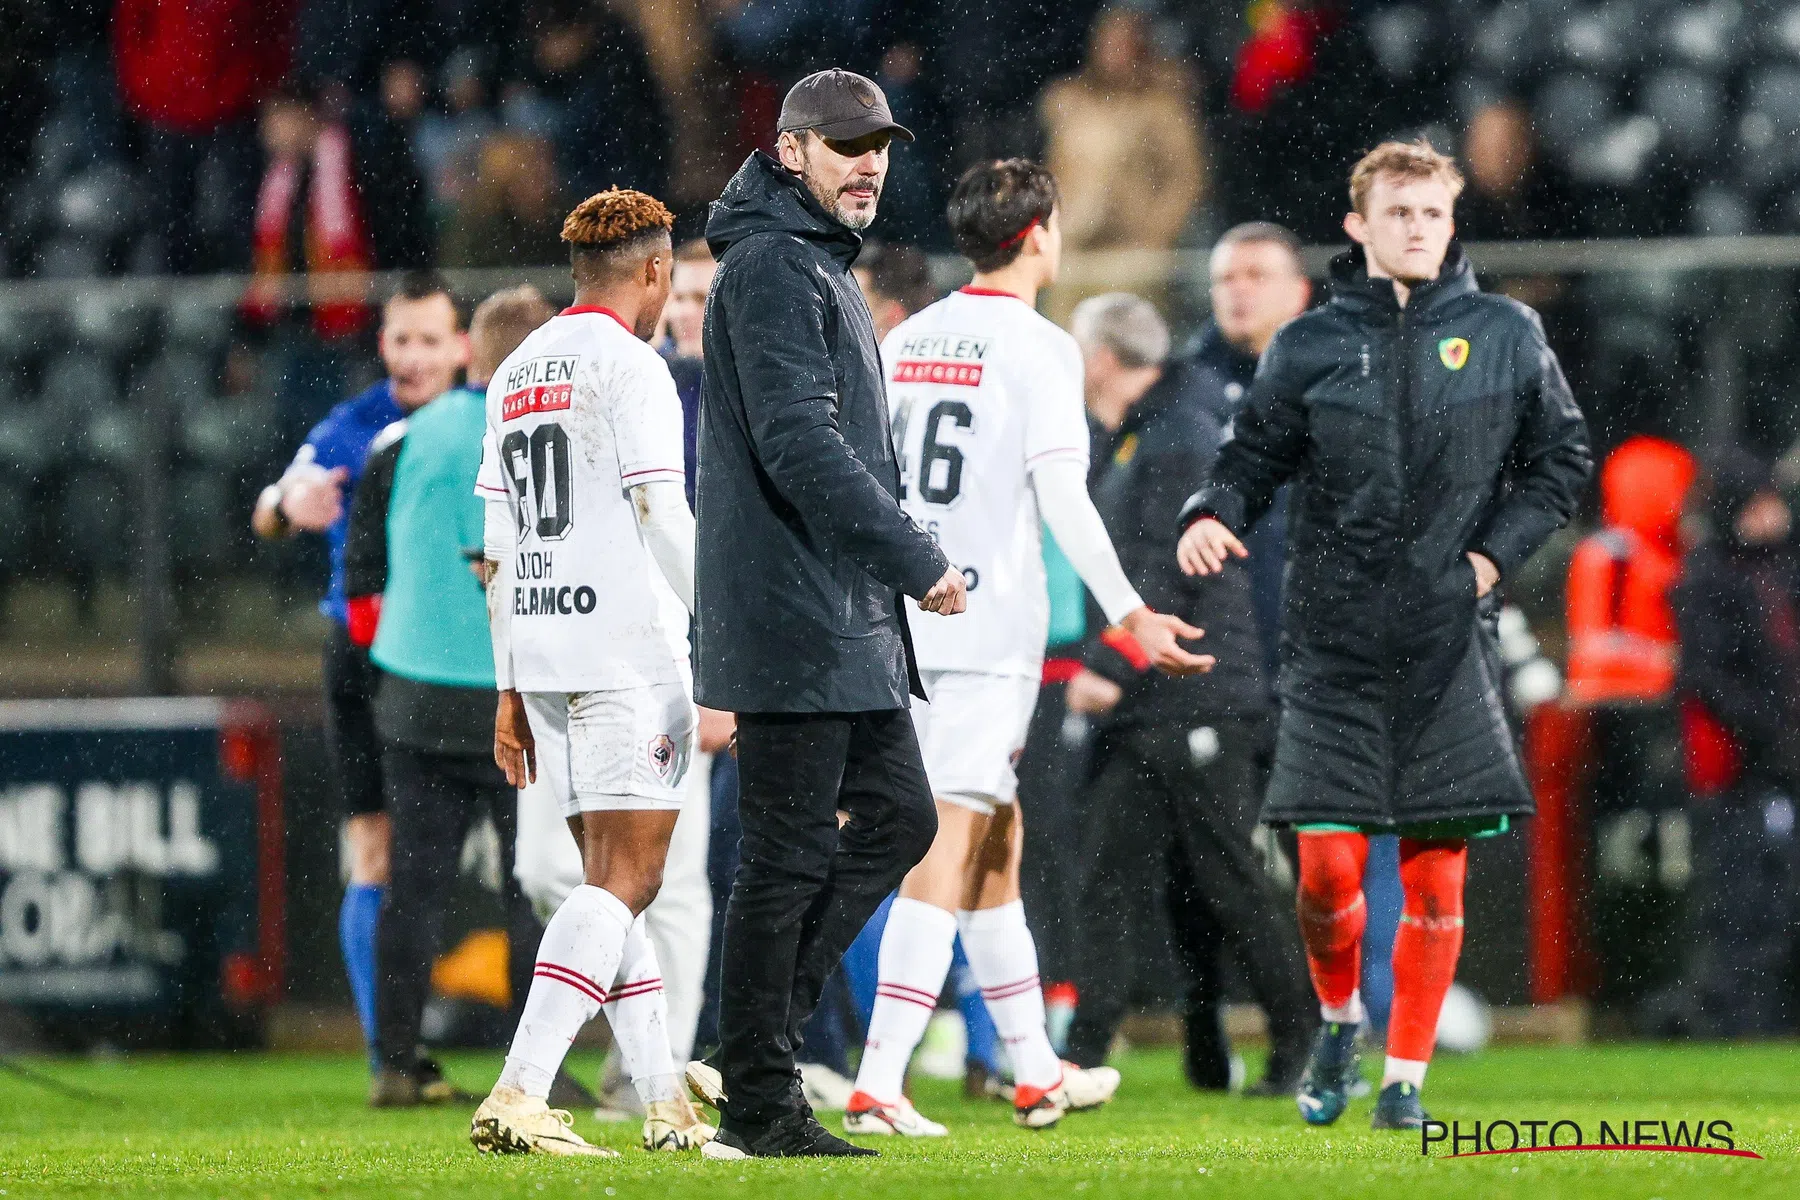 Van Bommel na remise tegen KV Oostende: ''Het leek zelfs een beetje arrogant''